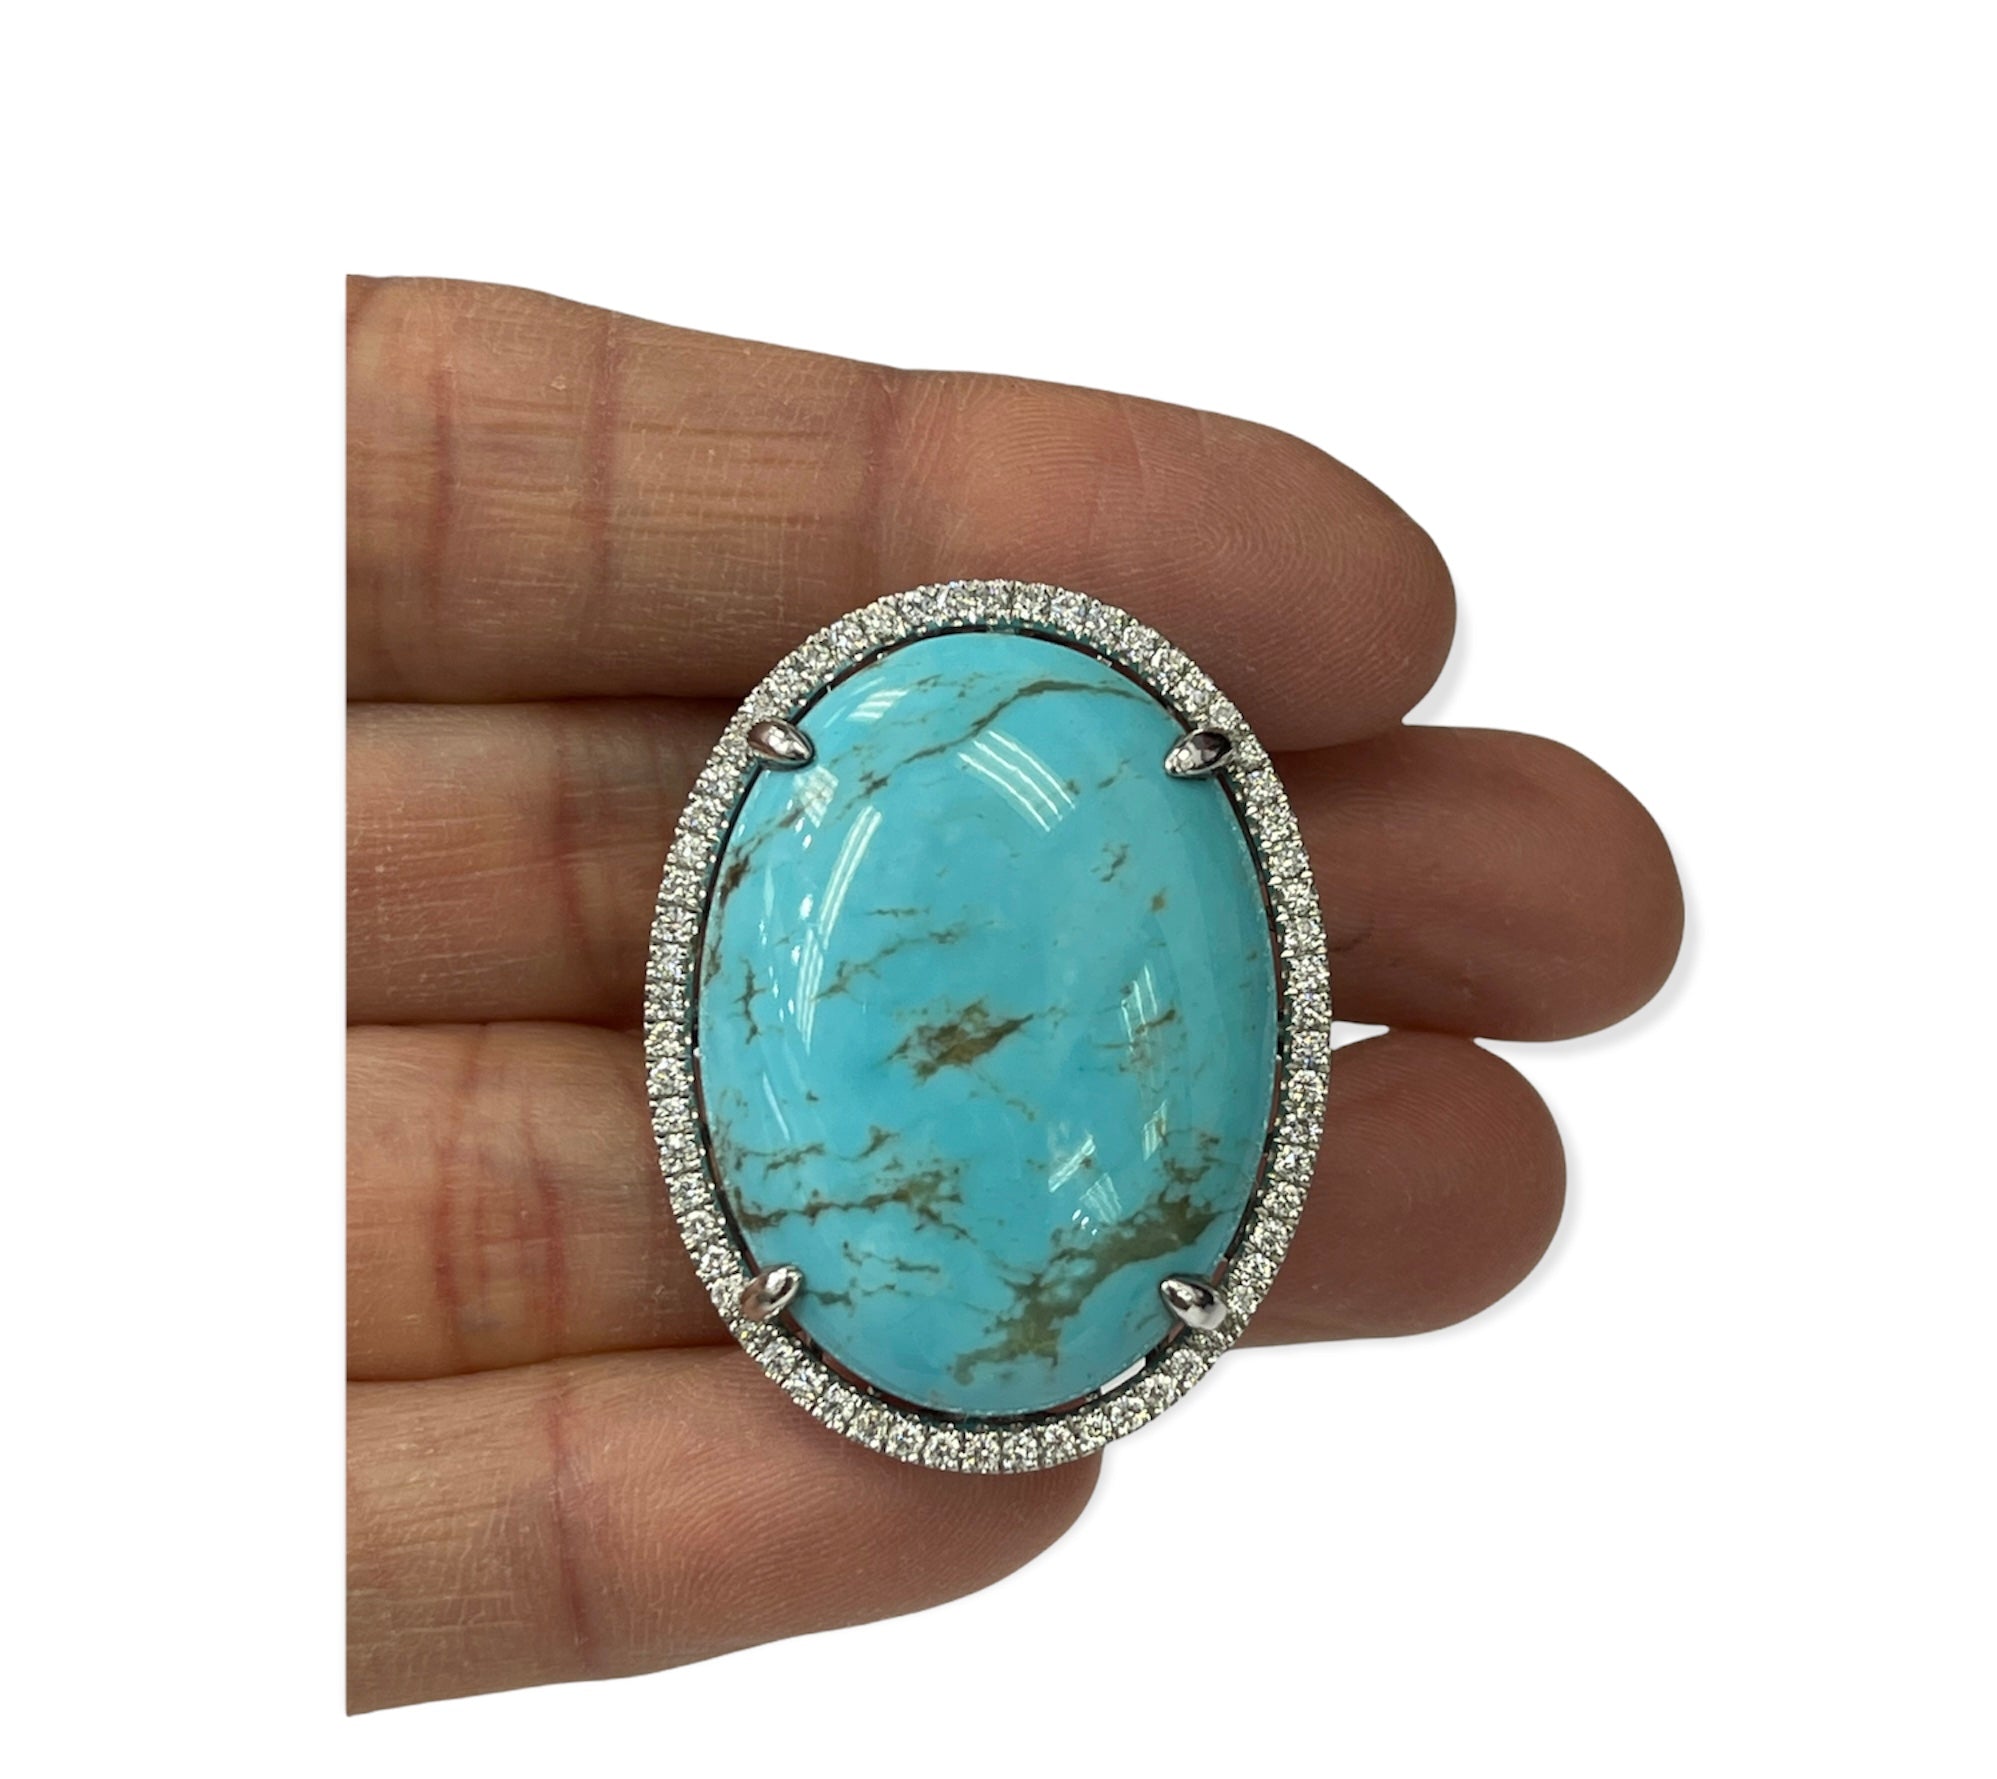 Huge Turquoise Gem Diamond Ring White Gold 14kt